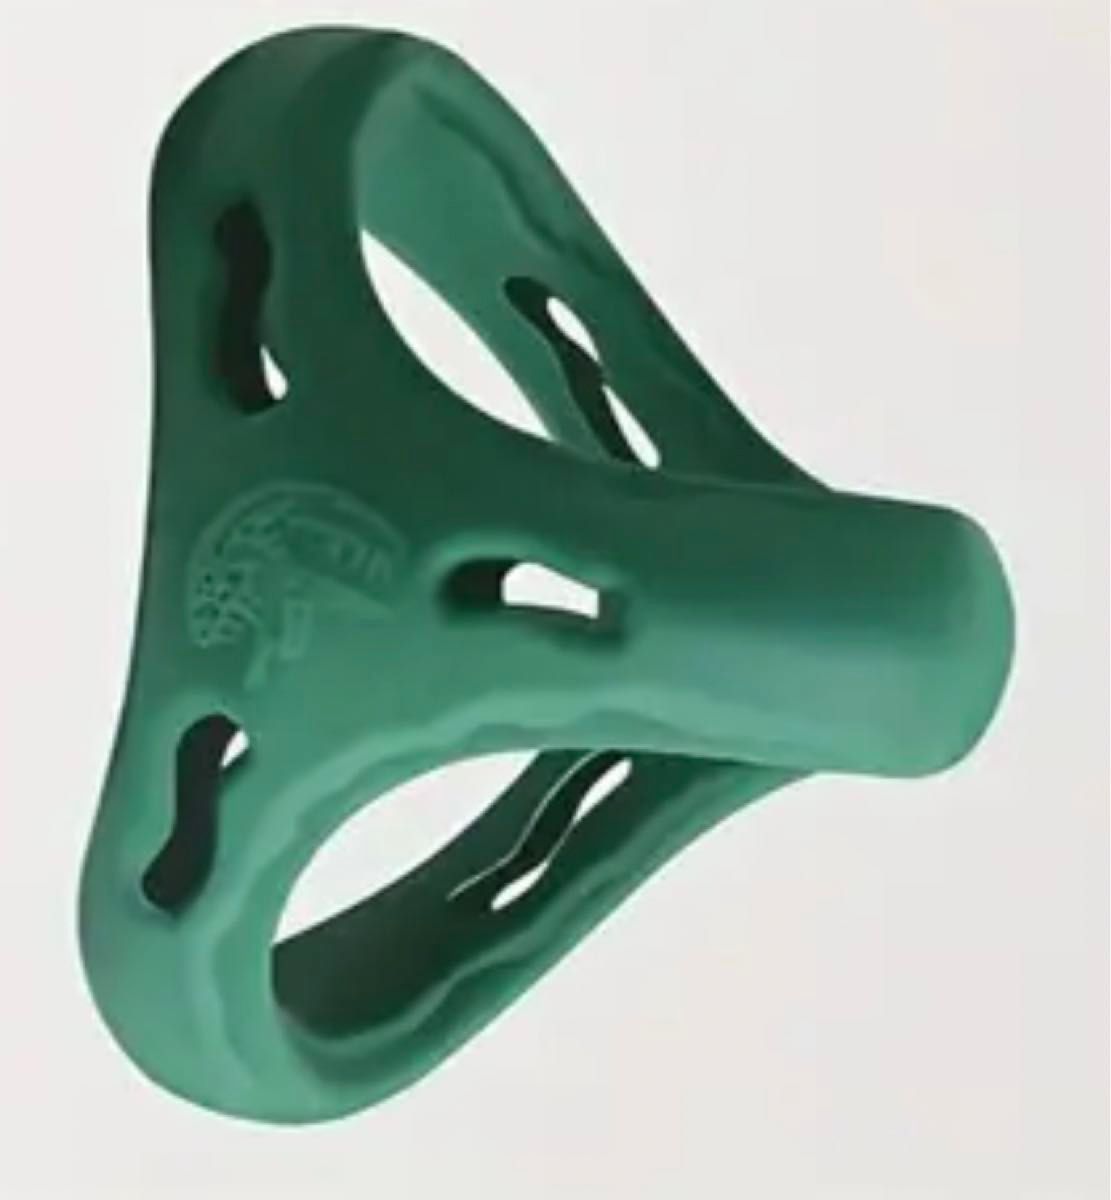 メンズ アクセサリー ペニスリング コックリング C-ring シリコンゴム製 緑色 グリーン